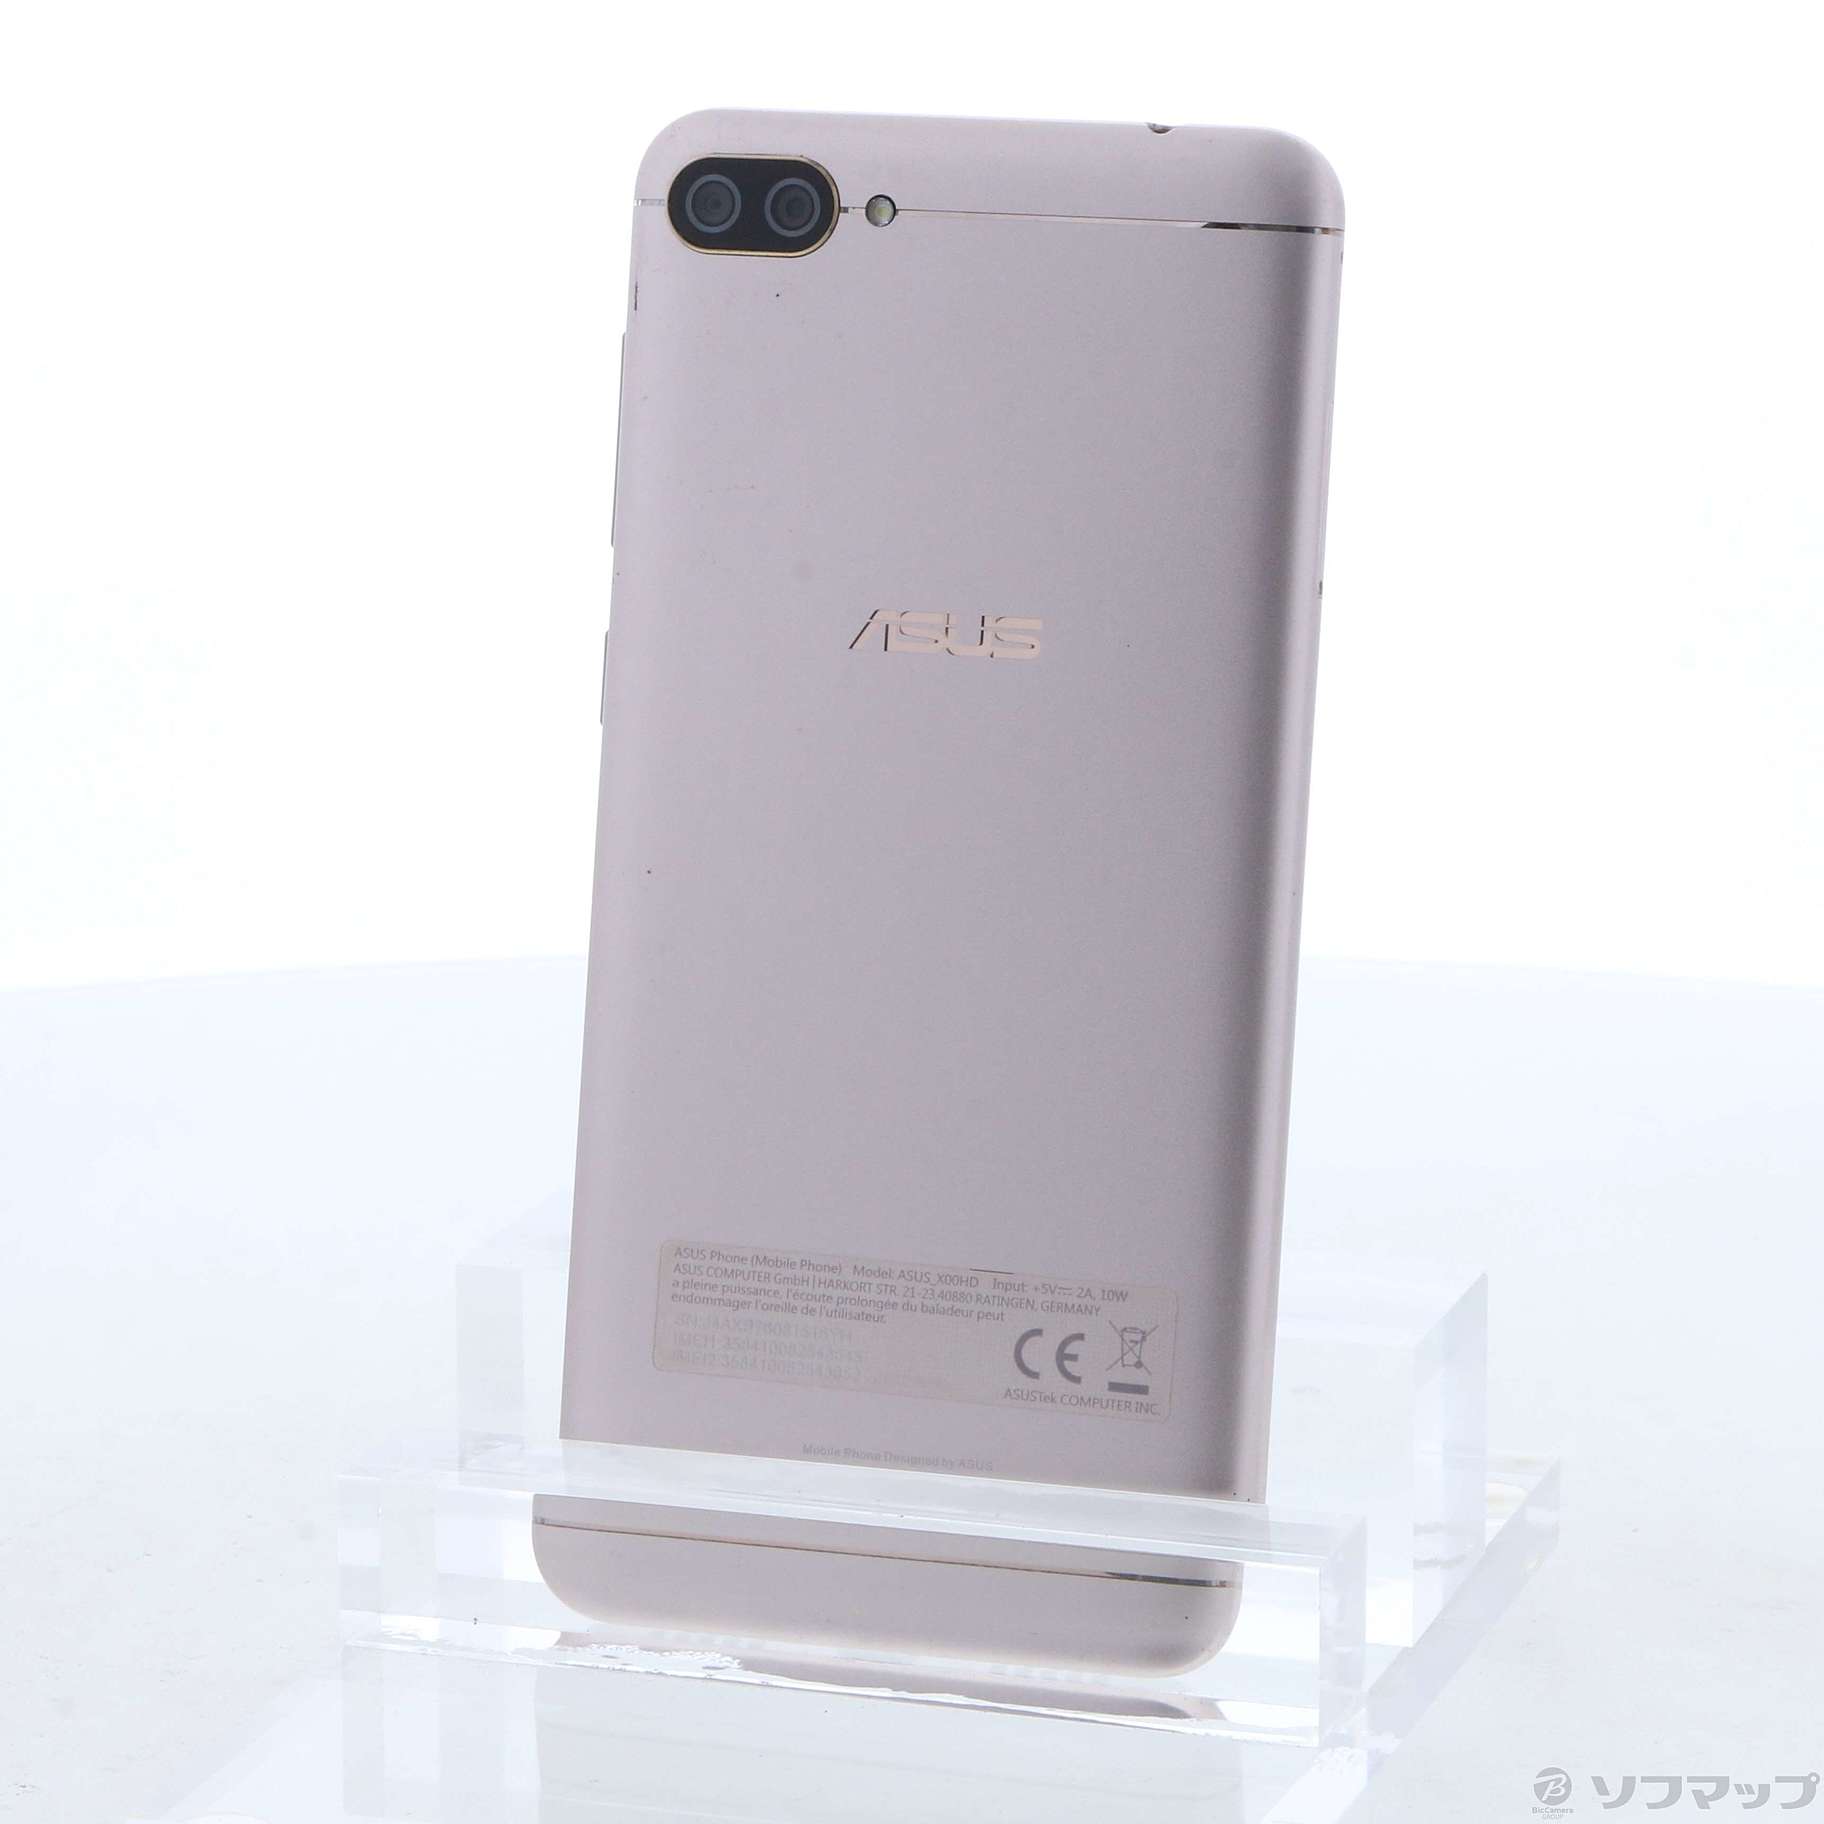 中古】ZenFone 4 Max 32GB サンライトゴールド ZC520KL-GD32S3 SIM